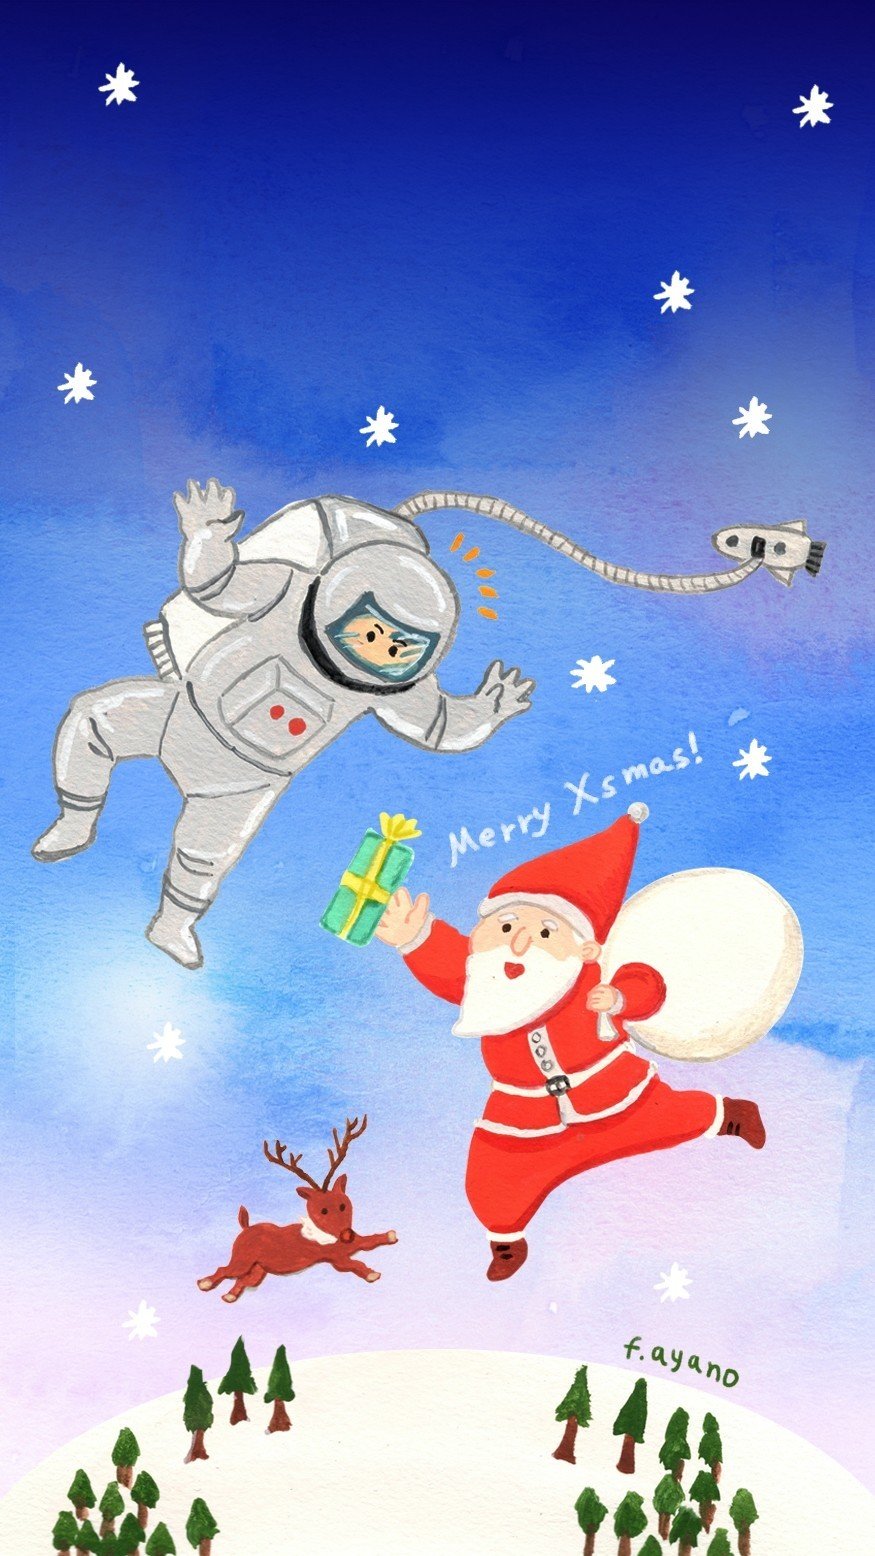 ちょと早いですがクリスマスのイラスト描きました 今年はサンタさん宇宙まで出張です こちらiphoneなど携帯壁紙サイズ で作りました 私のtwitterなどから画像ダウンロードしていただけます 個人でお 福井彩乃 イラストレーター Note